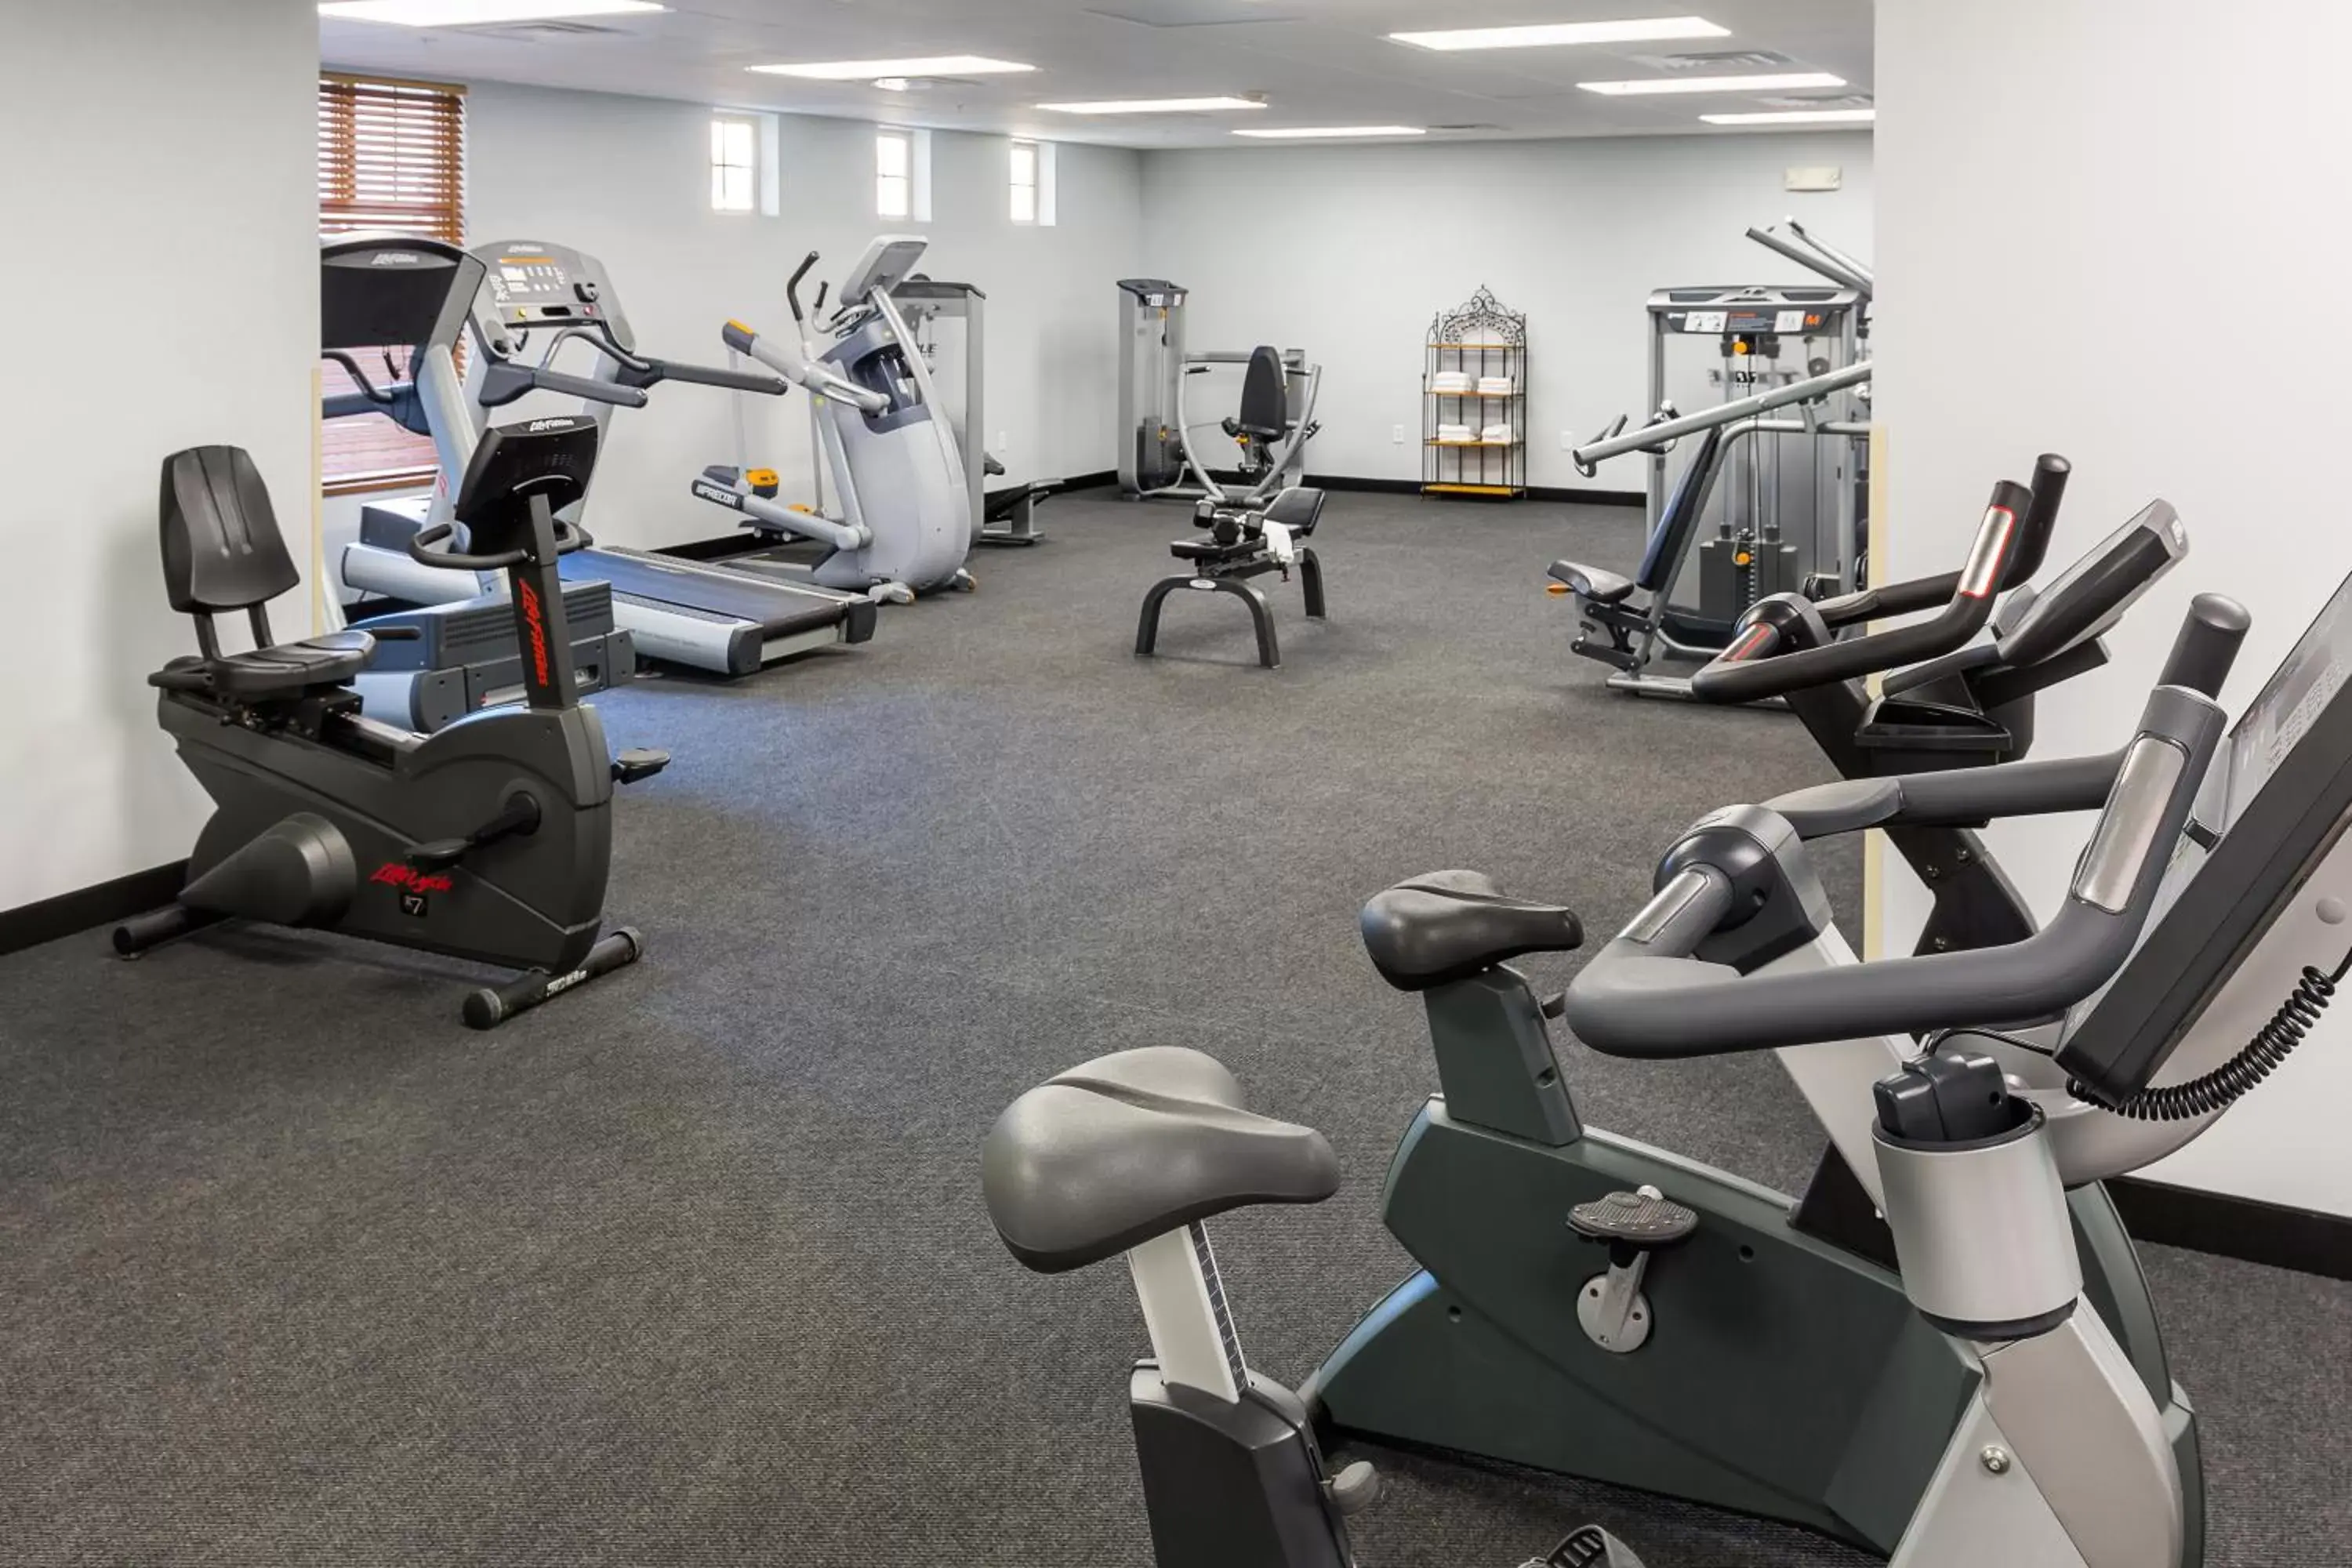 Fitness centre/facilities, Fitness Center/Facilities in Bridges Bay Resort